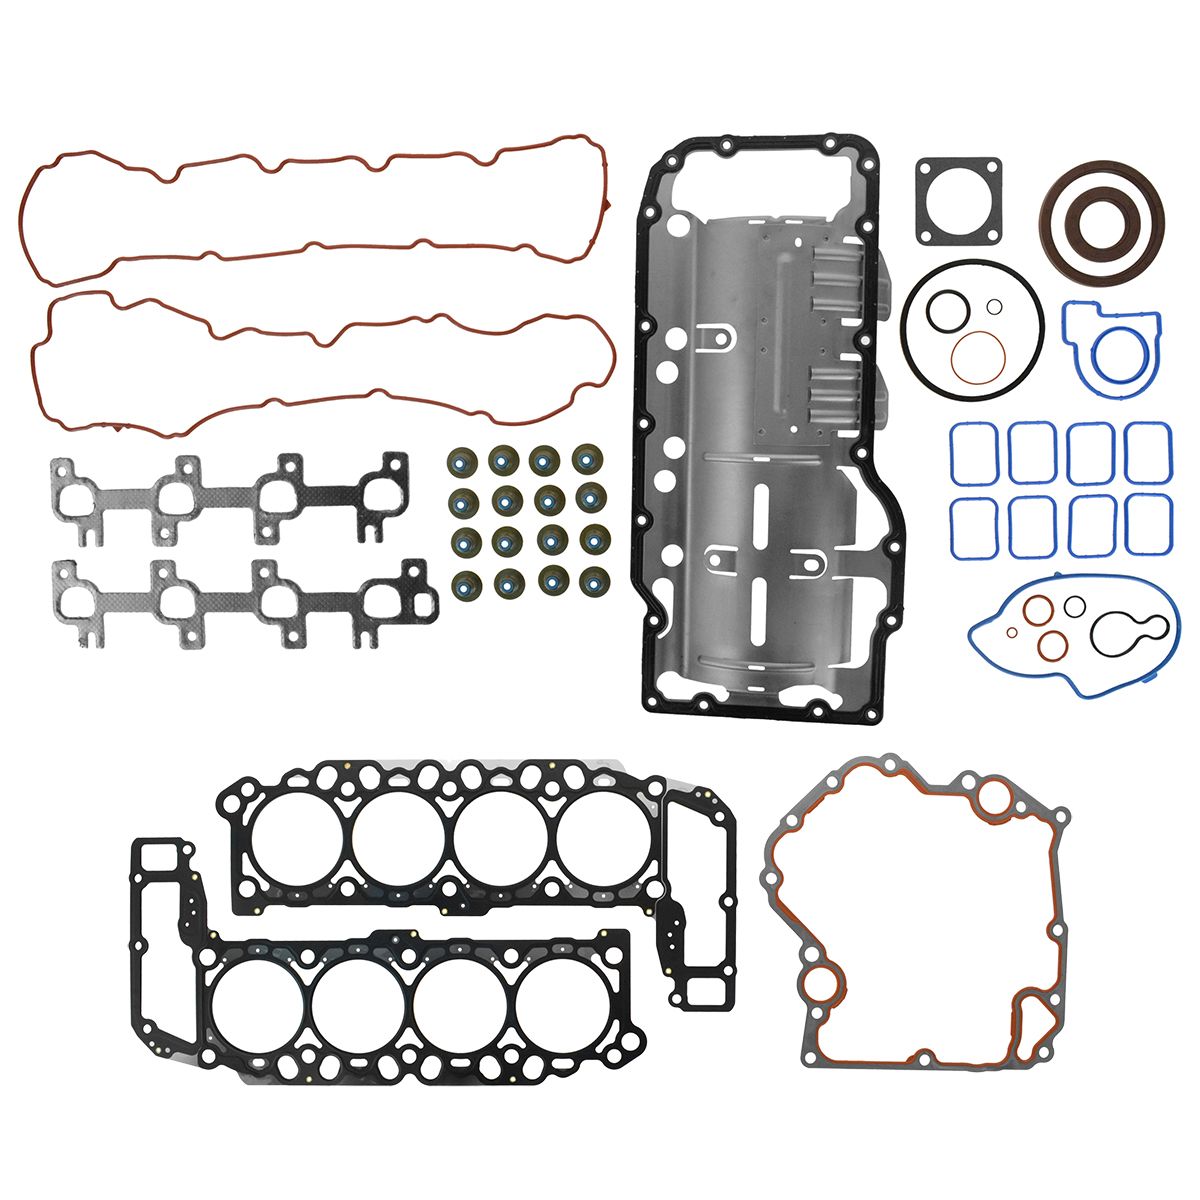 Engine Gasket Kit Set for Chrysler Dodge Jeep Mitsubishi Ram V8 4.7L